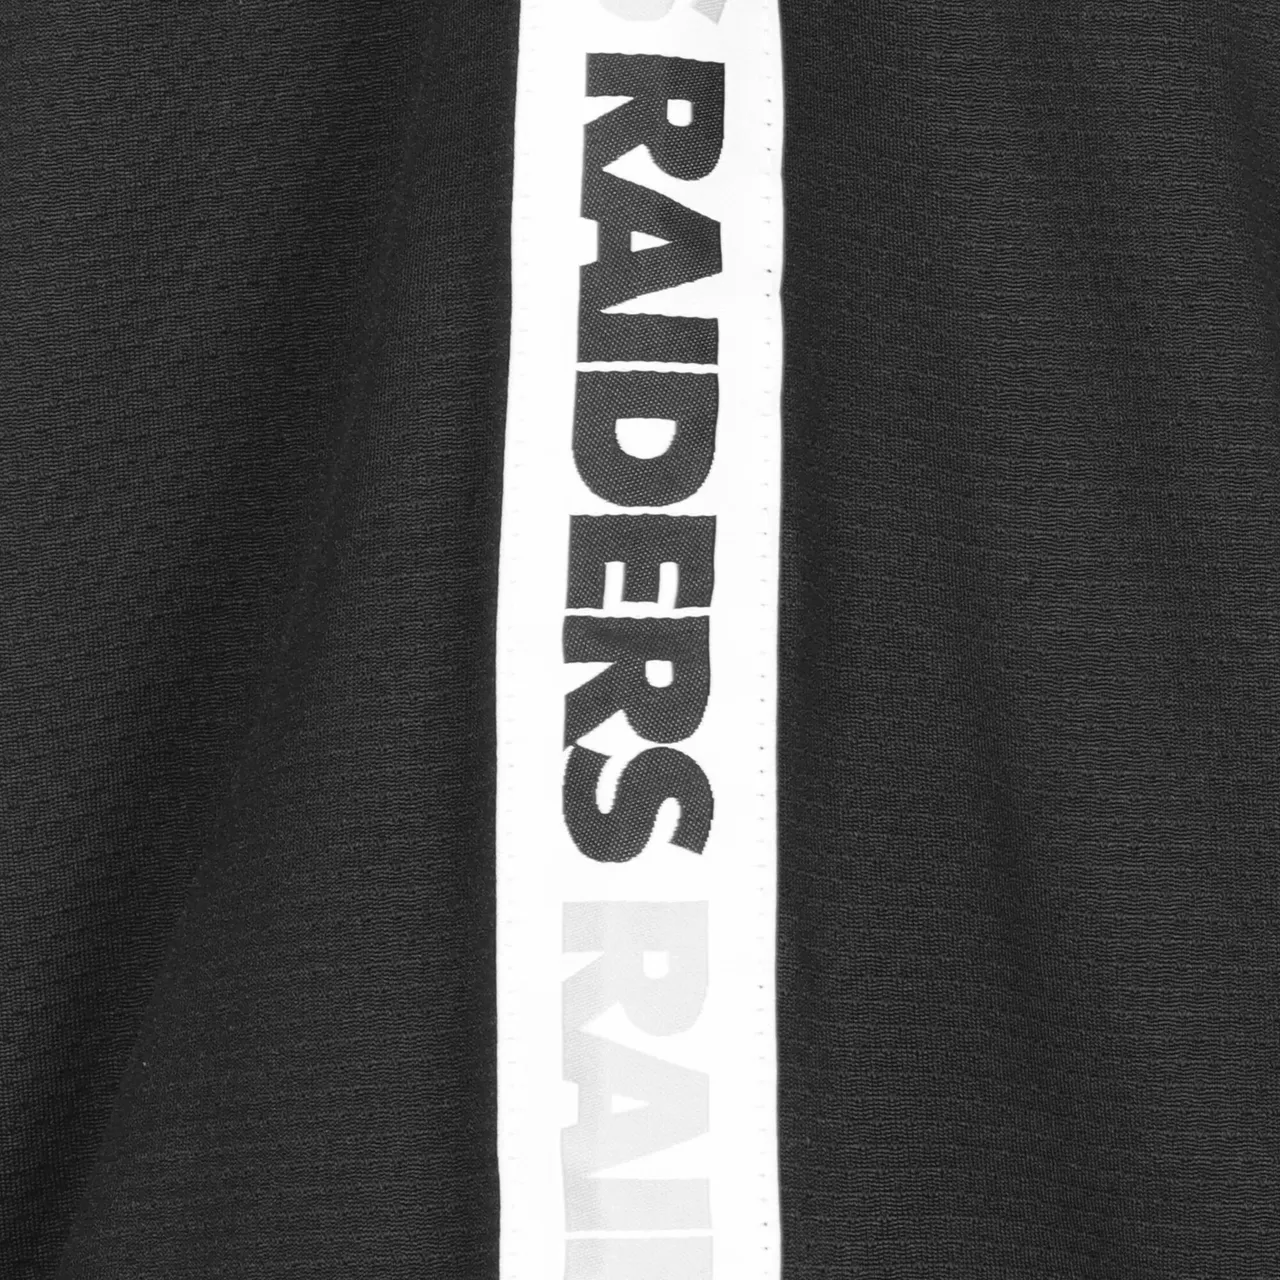 Shirt 'Las Vegas Raiders'